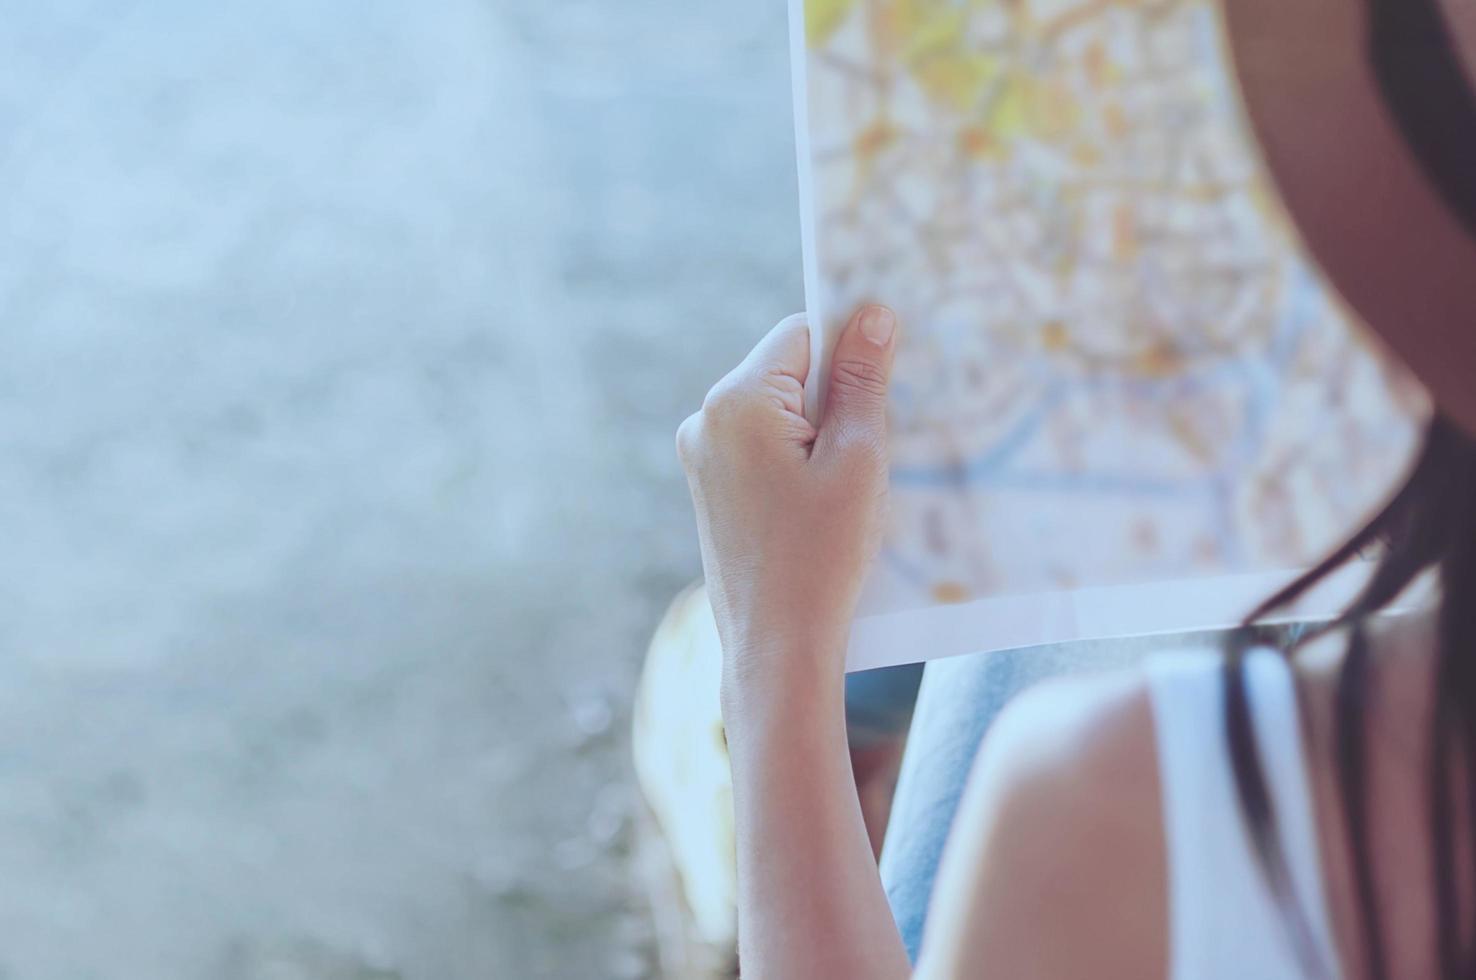 touristische reisefrau, die die karte betrachtet, während sie auf einer straße geht - straßenrucksack-reisekonzept foto